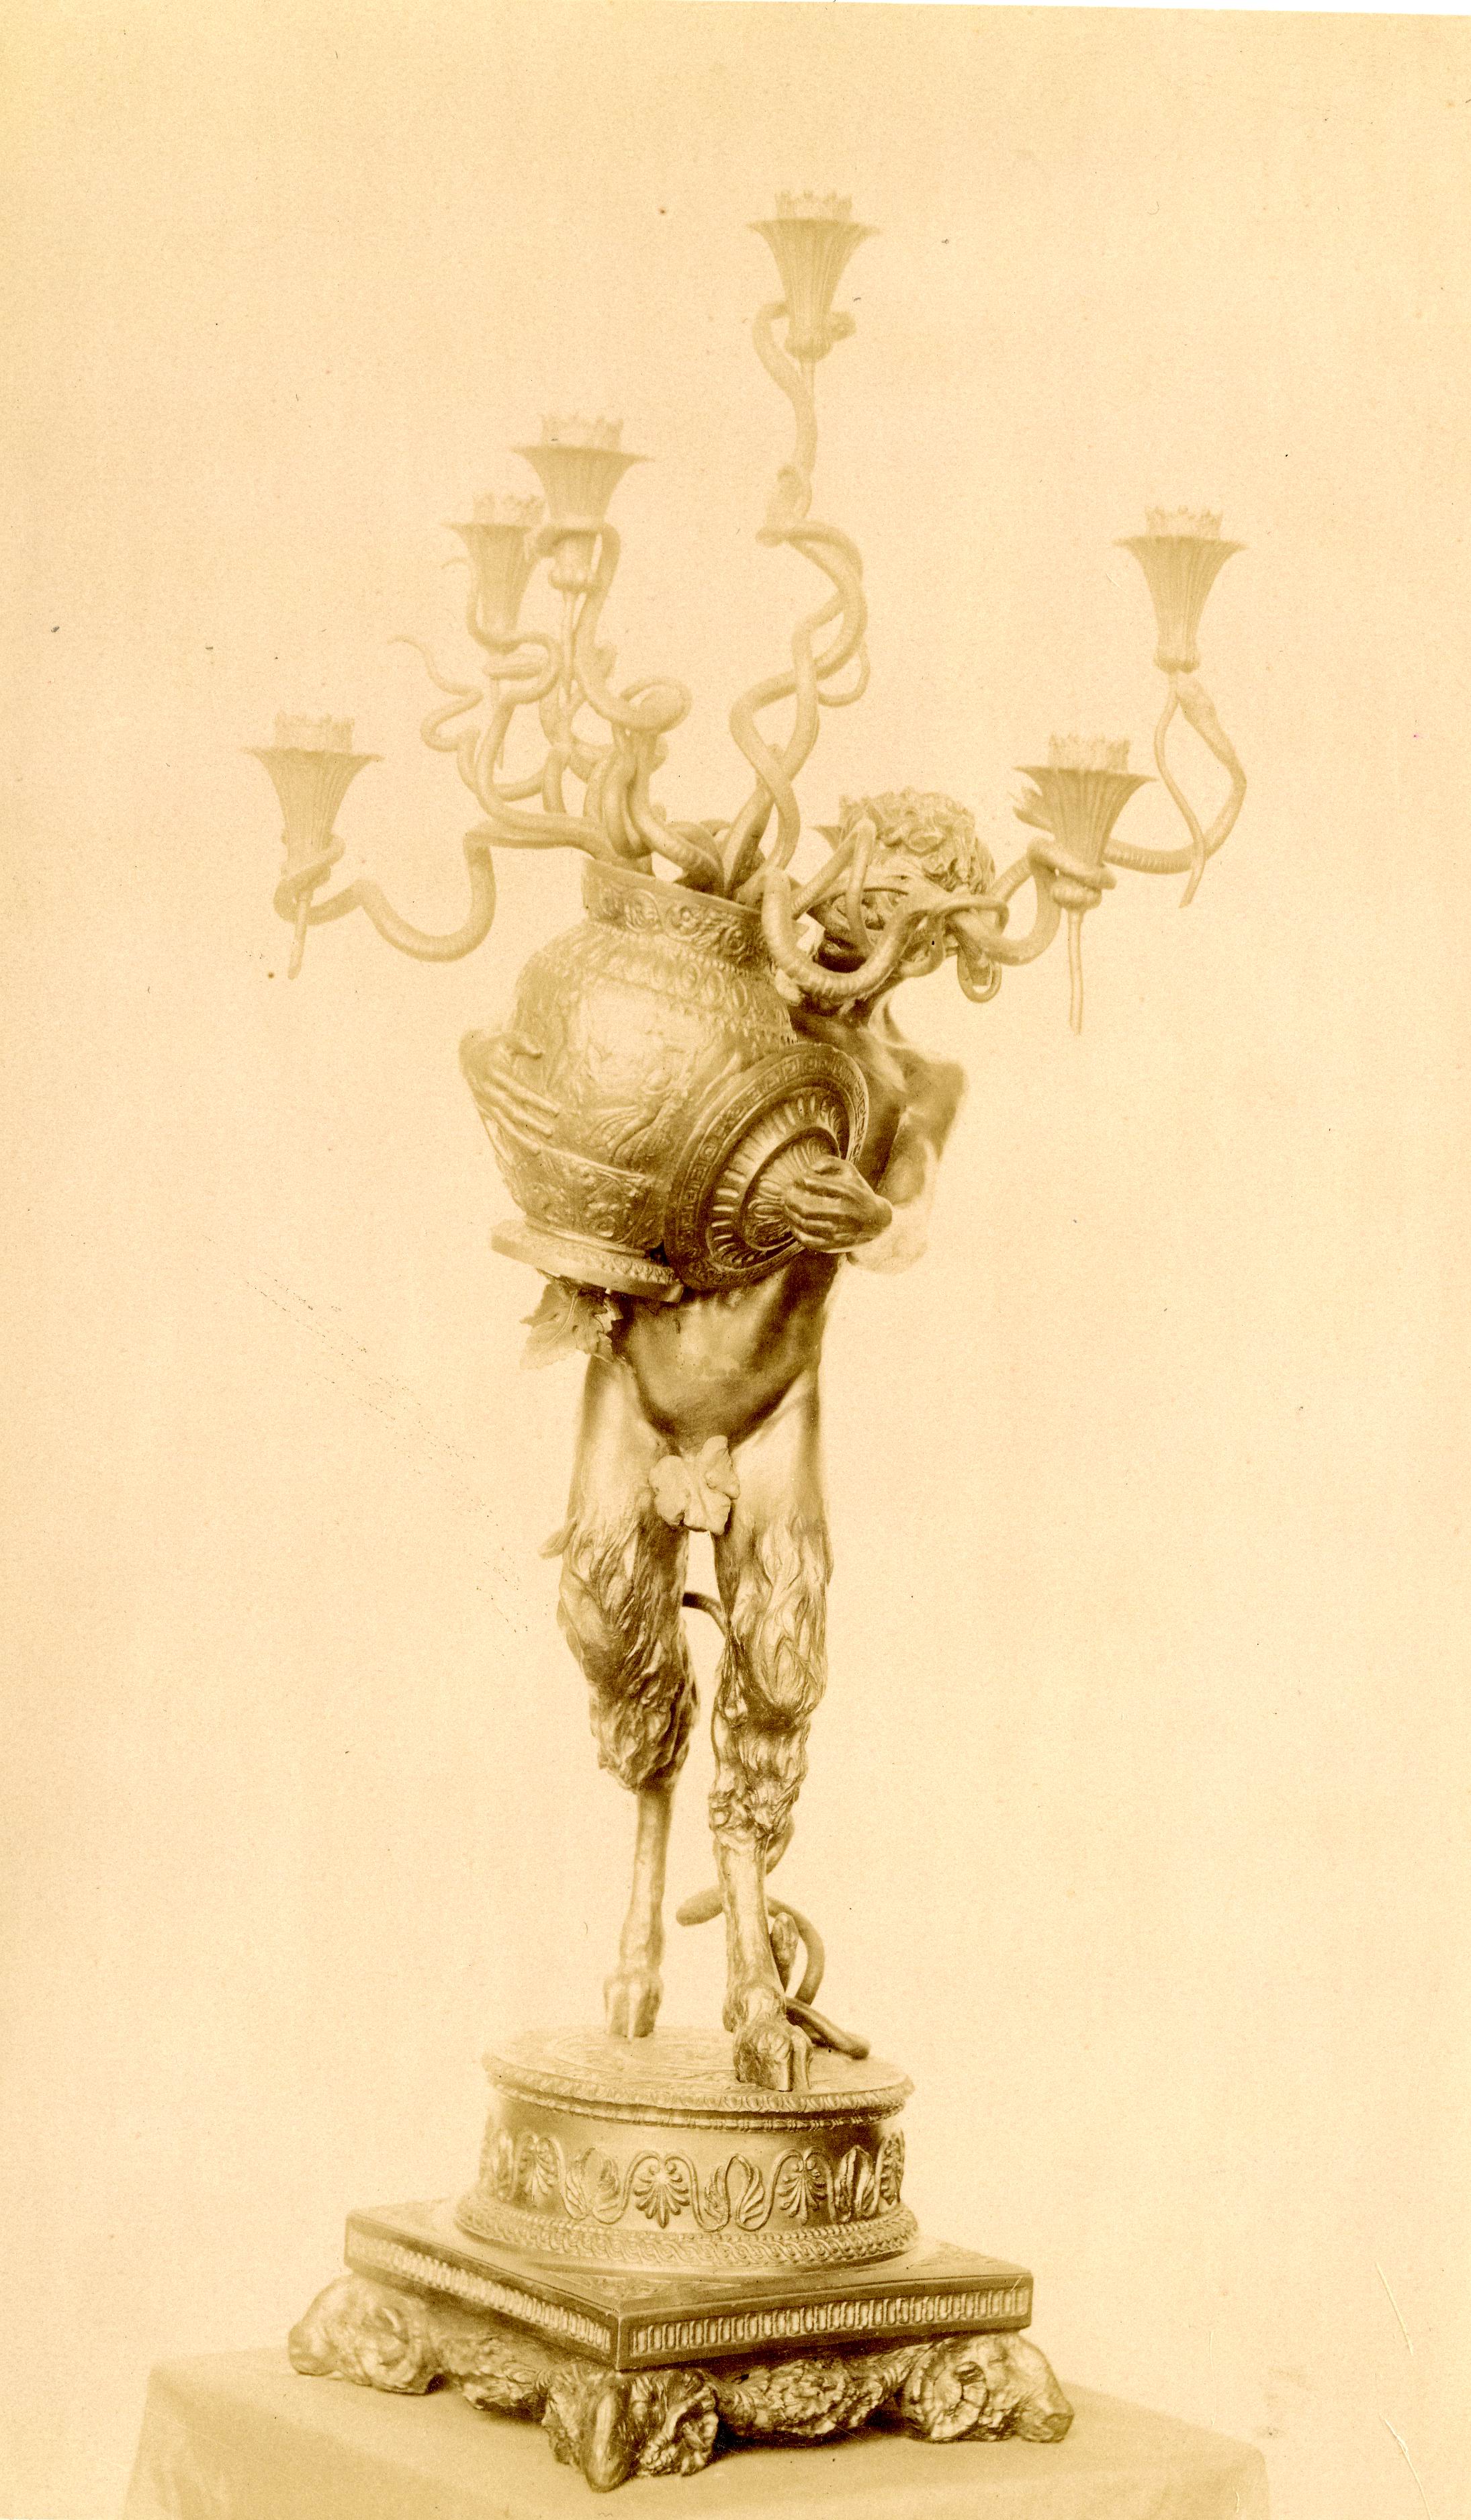 Arti decorative – Figura mitologica romana – Sec. 19 (positivo) di Anonimo, Palizzi, Filippo (ultimo quarto XIX)